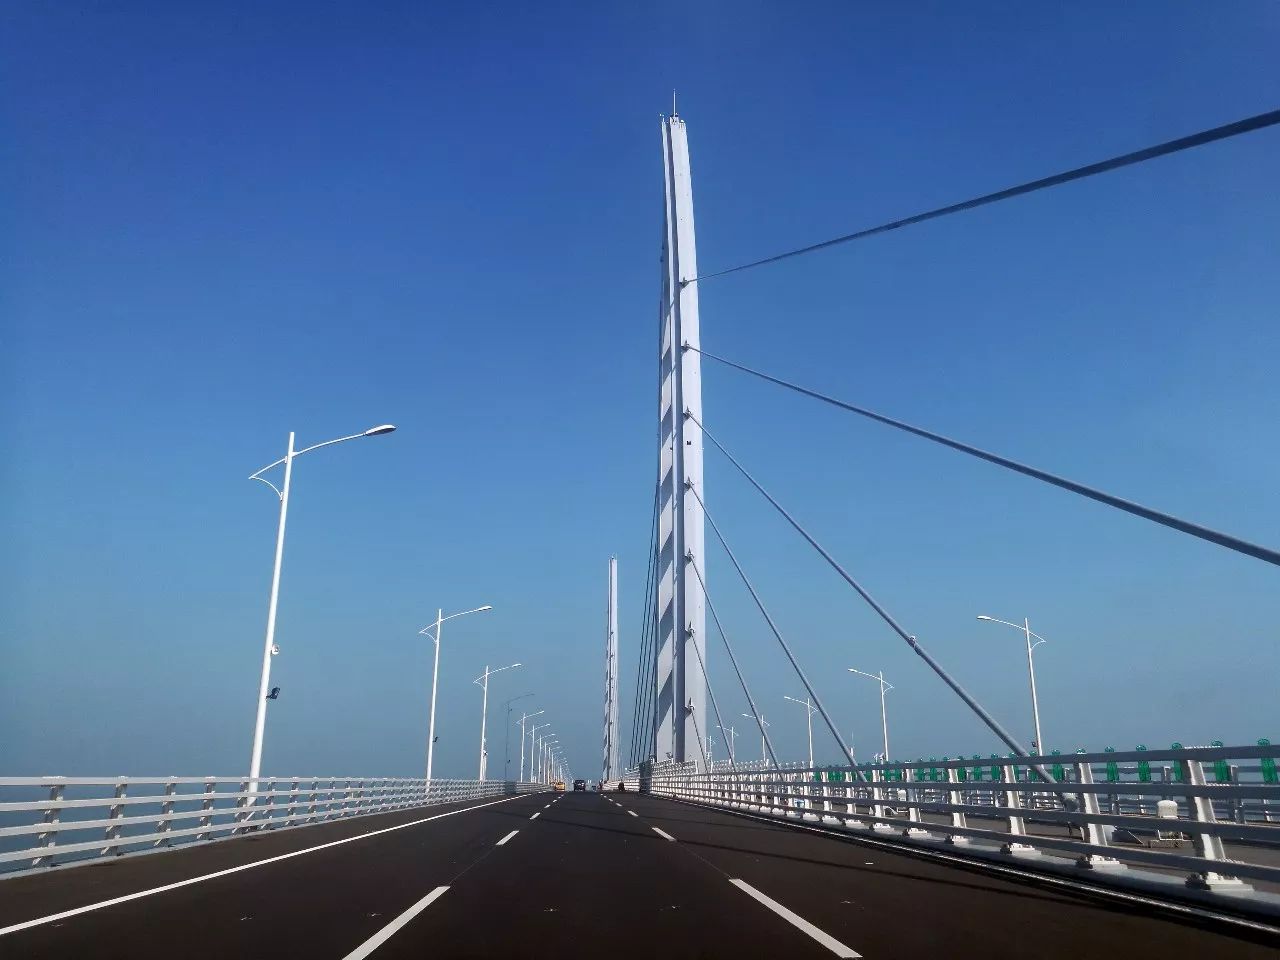 港珠澳大桥已成广州人旅游新热点!100元一日游